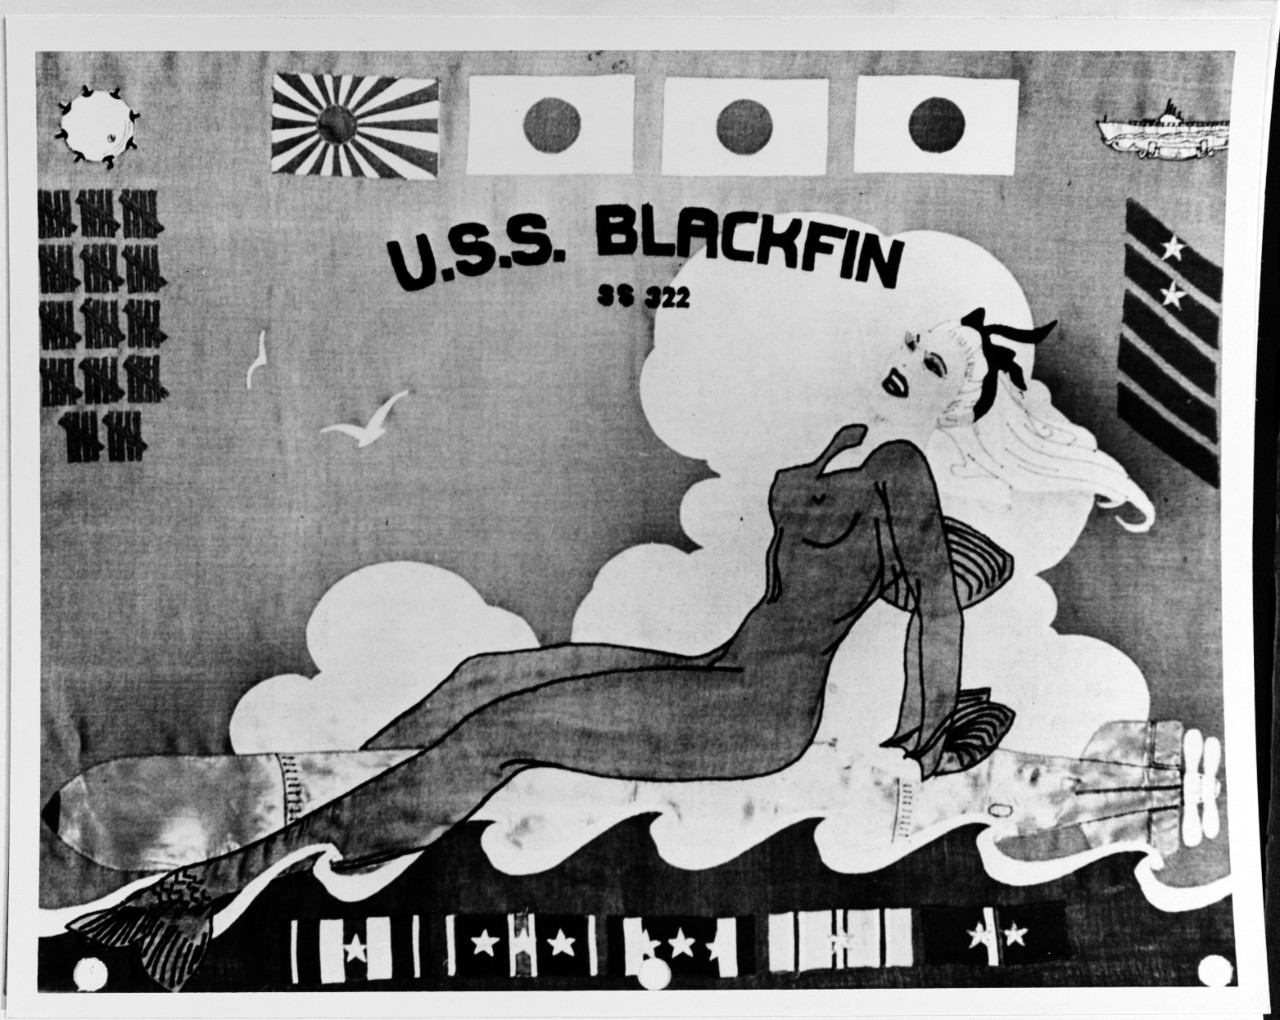 Battle flag: USS BLACKFIN (SS-322)